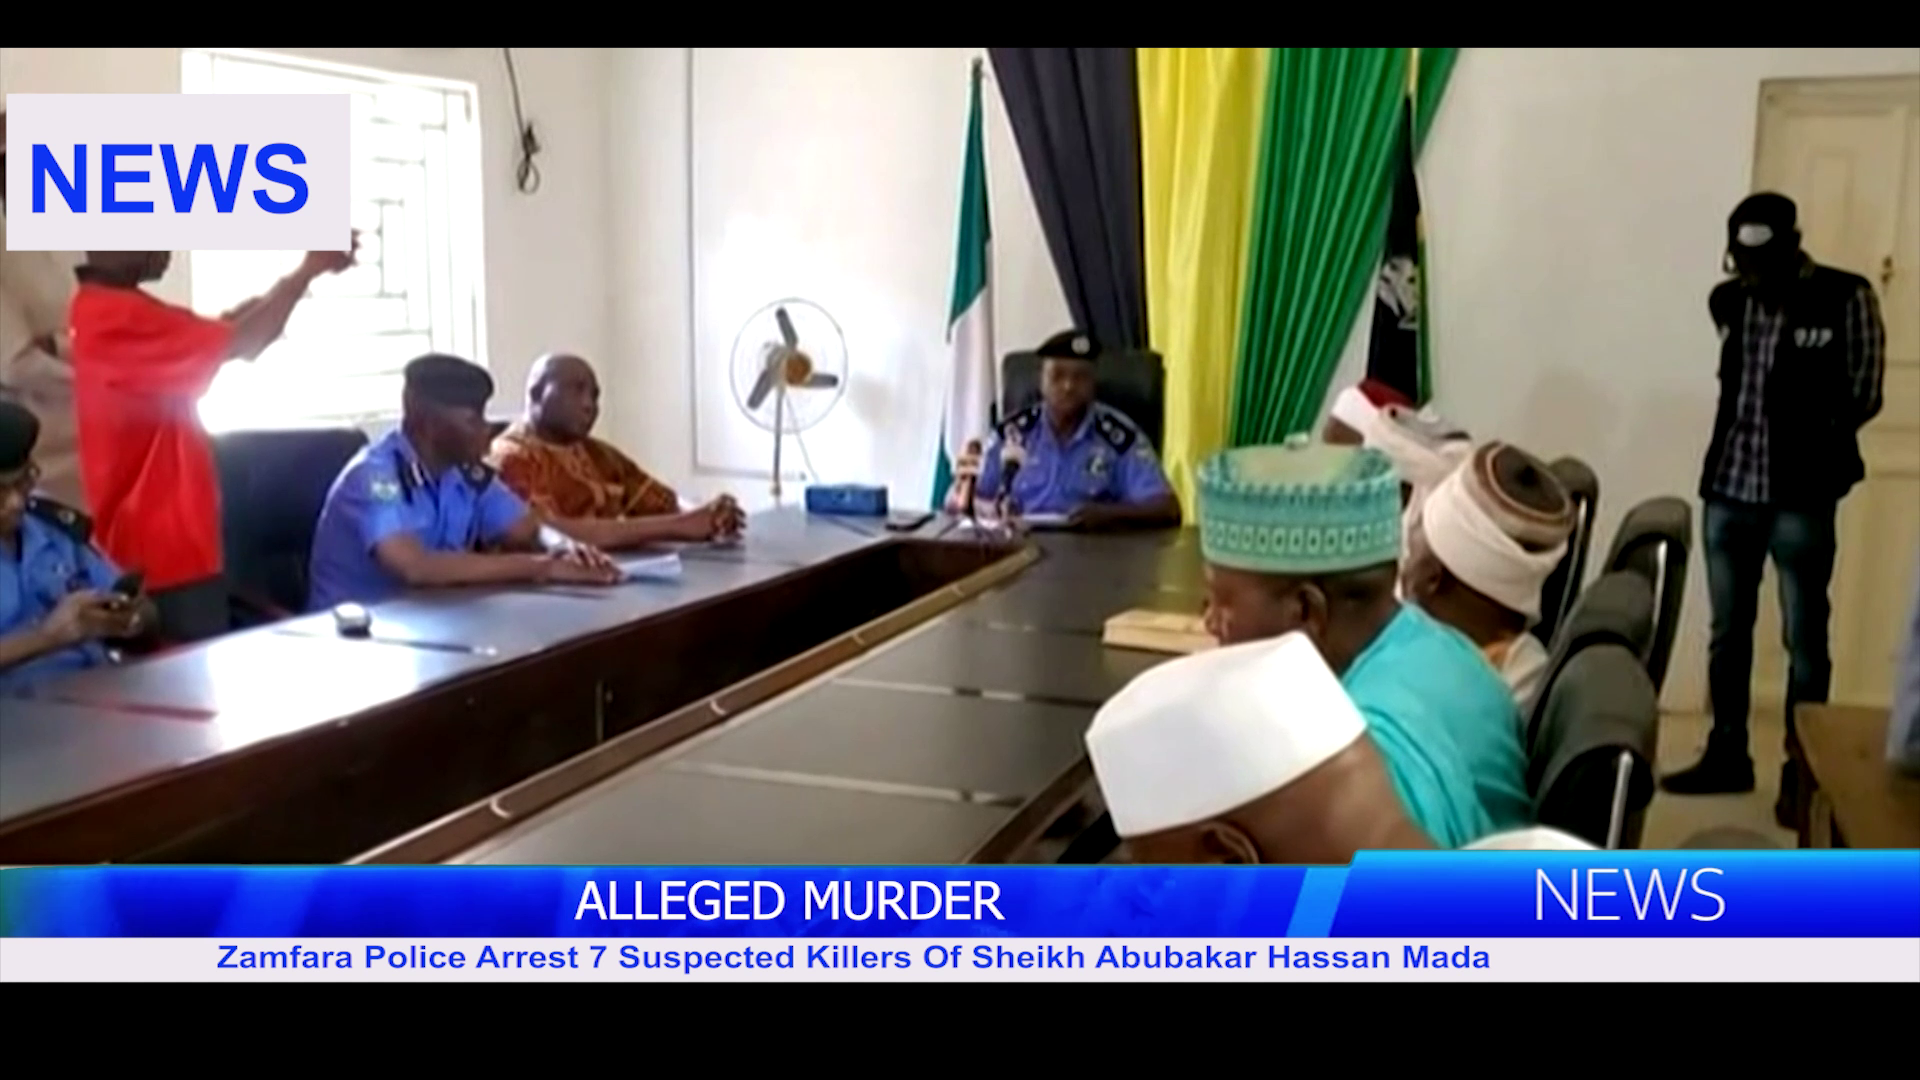 Zamfara Police Arrest 7 Suspected Killers Of Sheikh Abubakar Hassan Mada